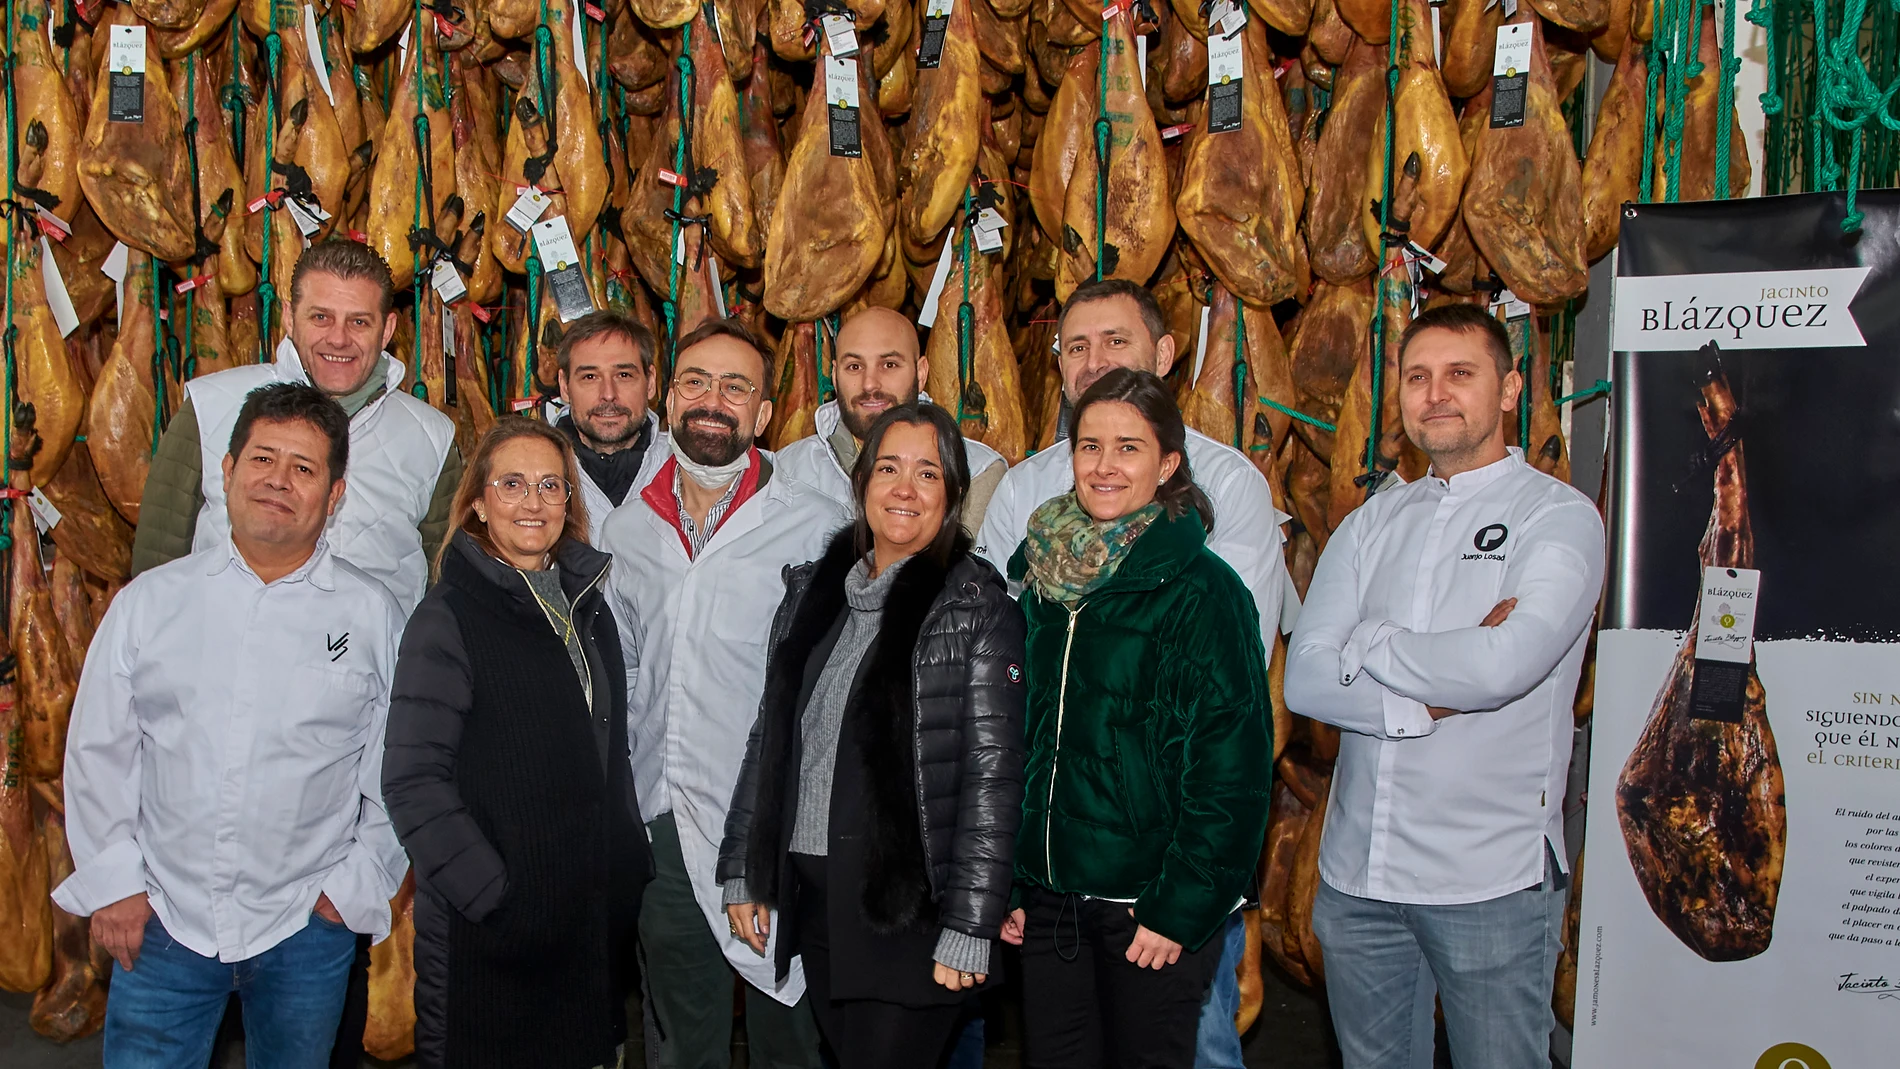 Representantes de la familia Blázquez, junto a los cocineros que acudieron a la presentación del nuevo jamón